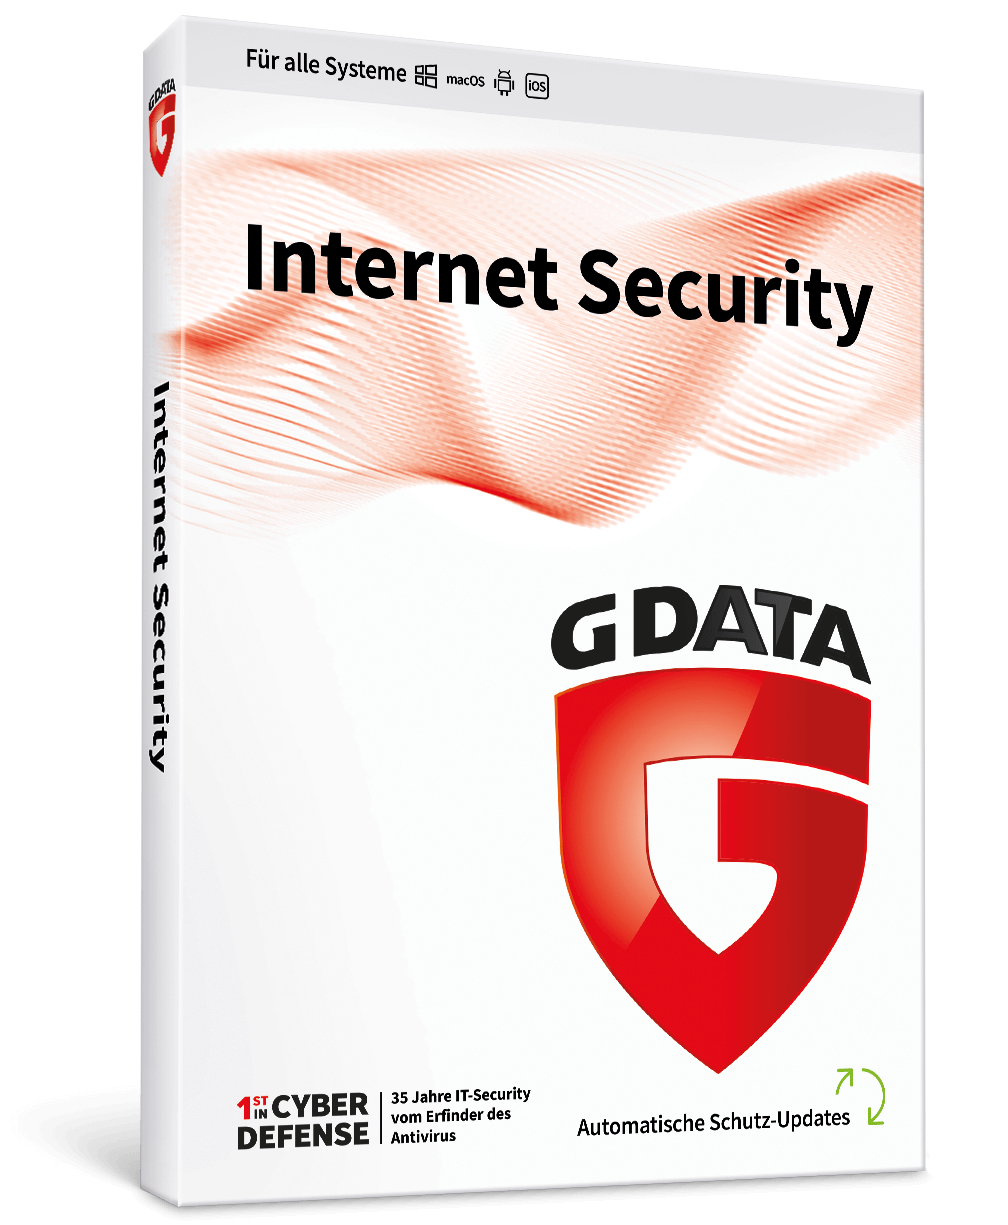 Sécurité Internet des données G